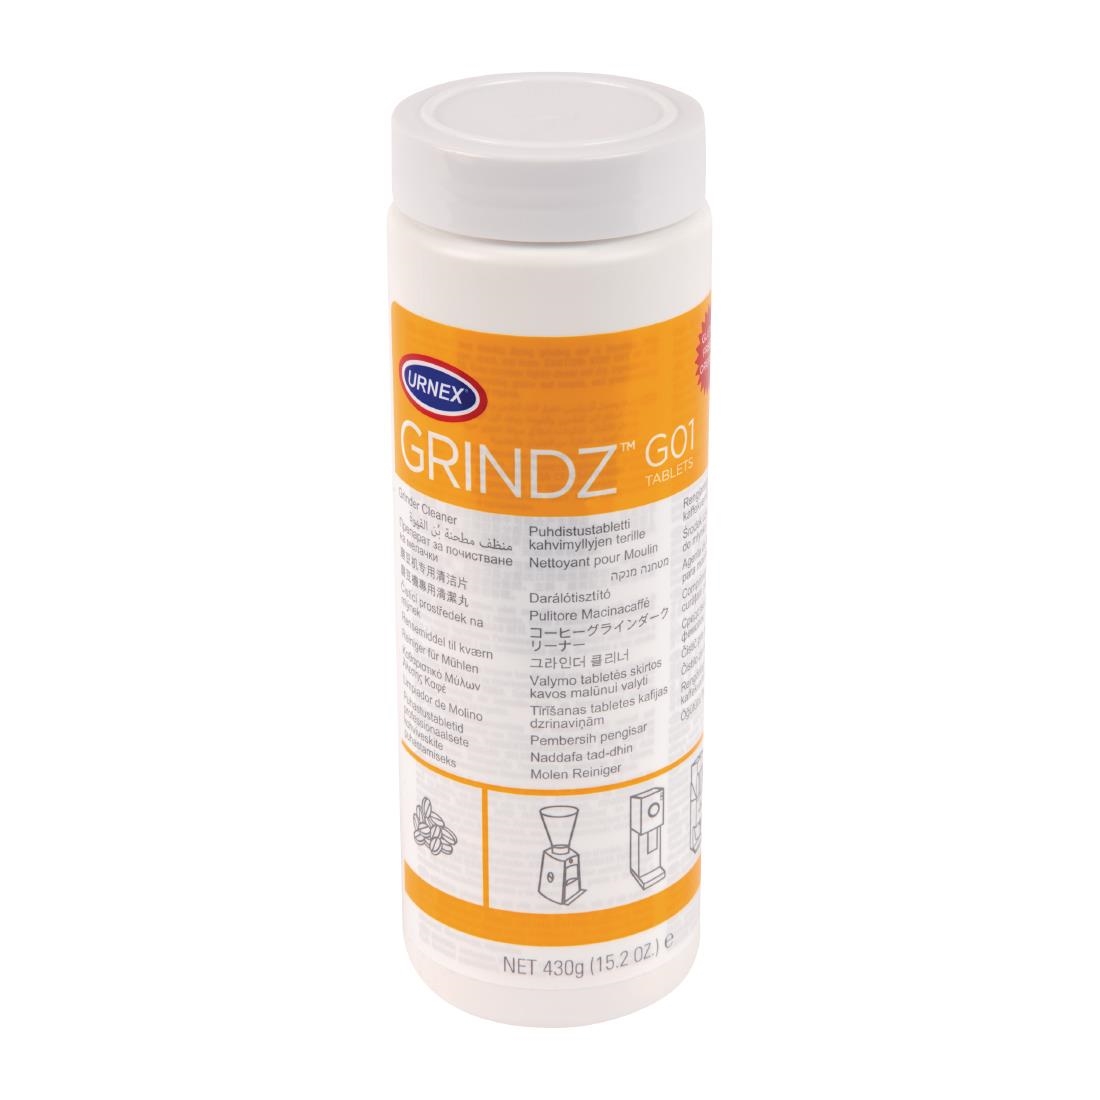 Urnex Grindz Coffee Grinder Cleaner Tablets 430g (12 Pack)